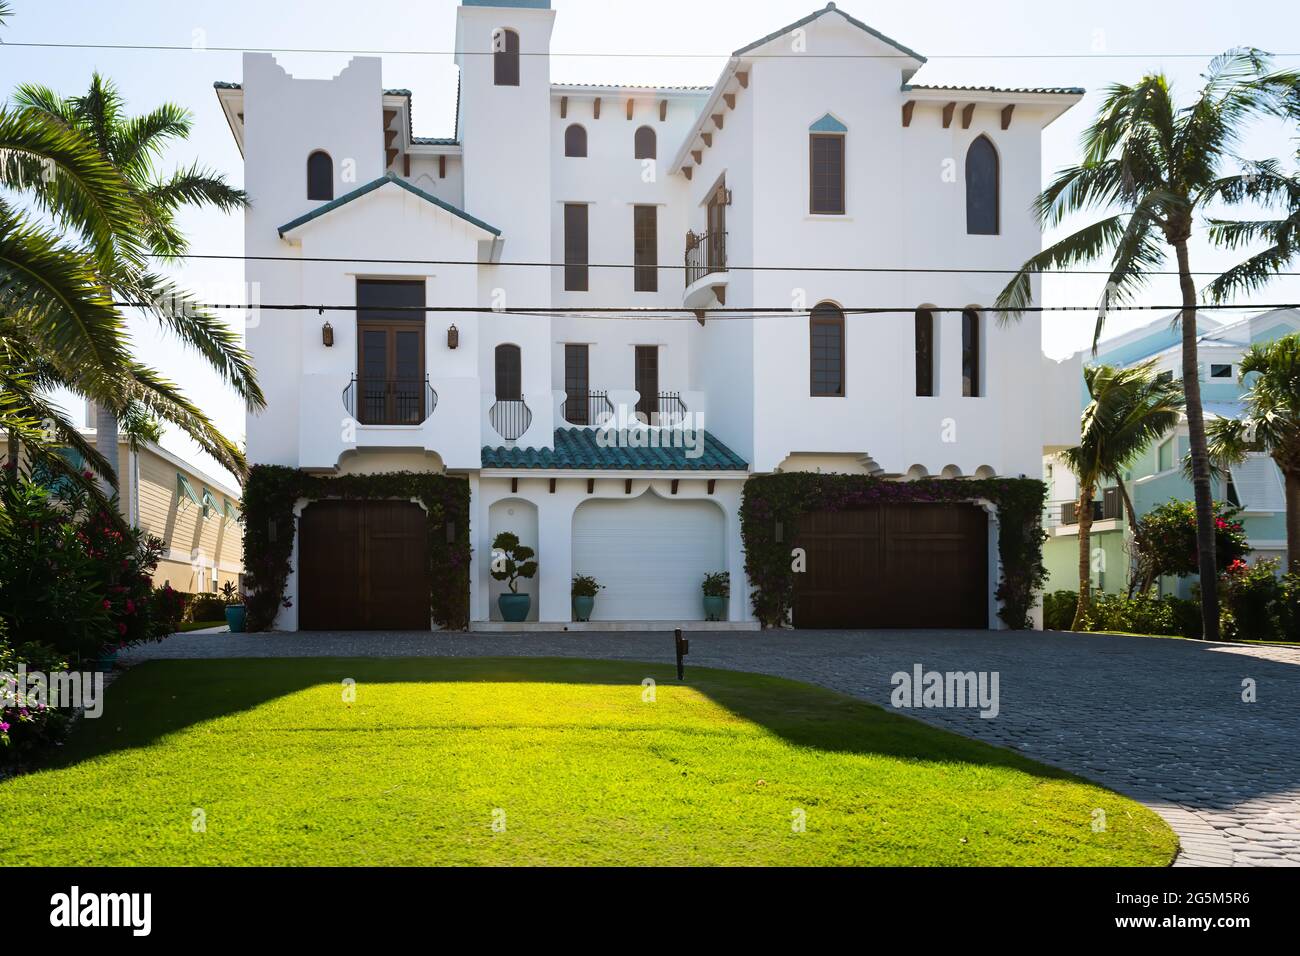 Bonita Springs, il golfo della Florida della costa del messico con bianco villa di lusso villa villa villa casa moderna lungomare architettura e viale di accesso al garage Foto Stock